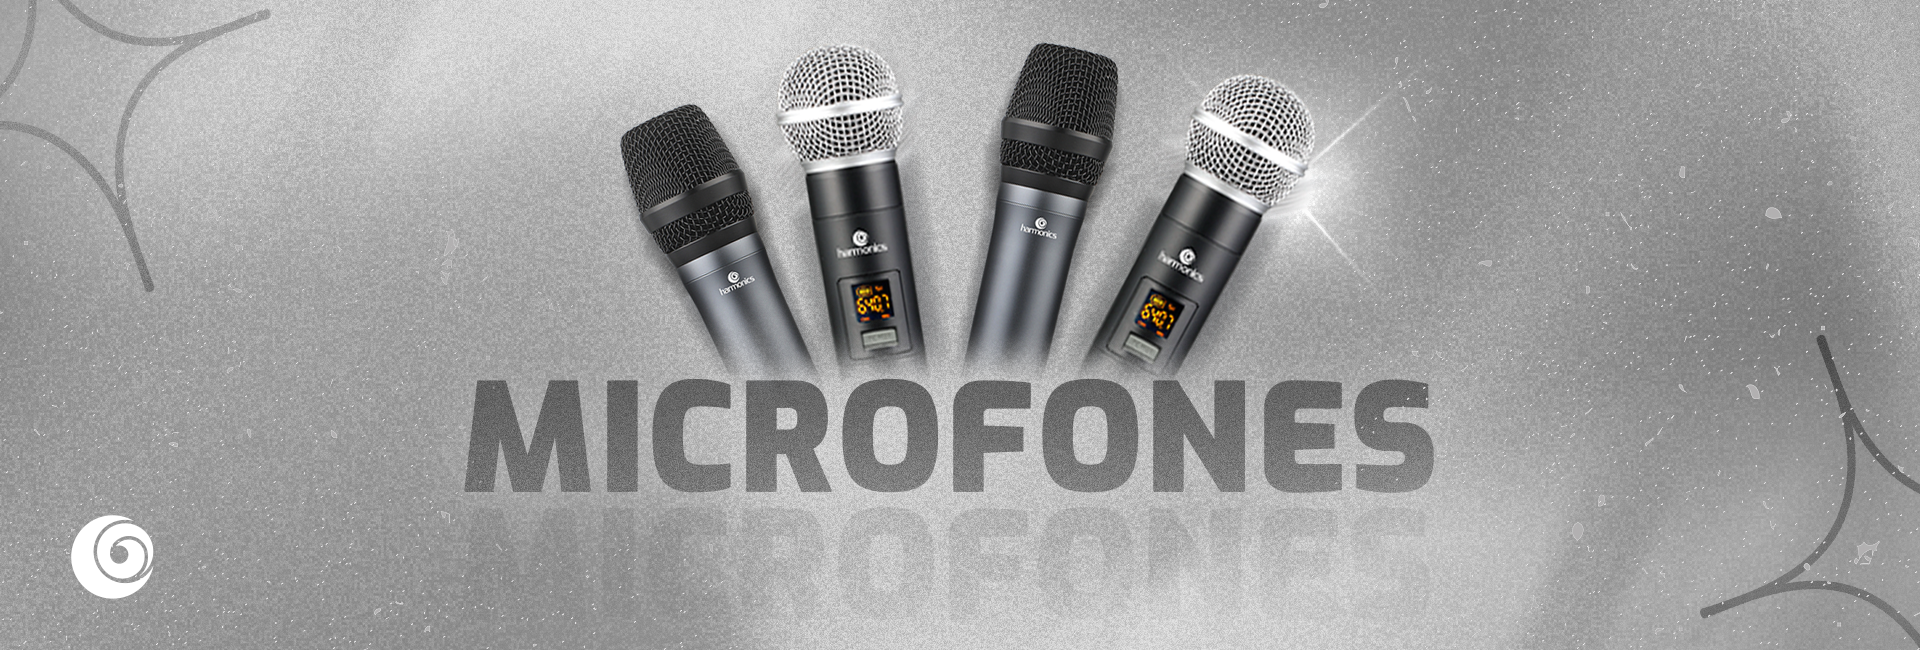 Microfones_-_1920x650